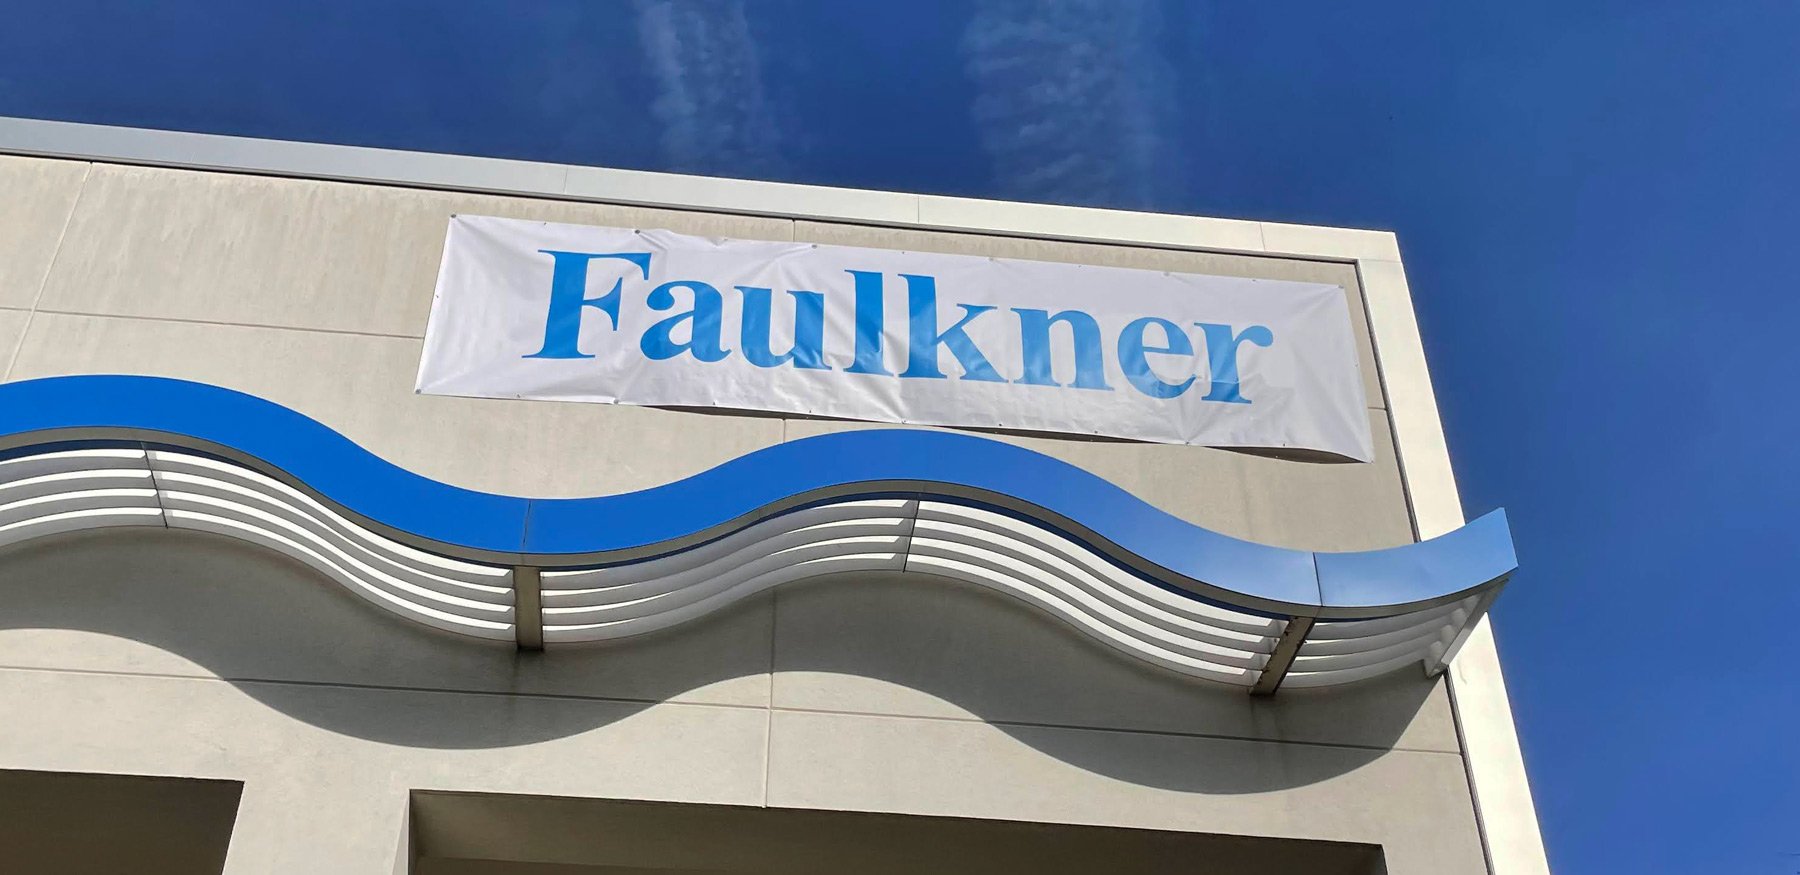 outdoor-sign-faulkner-banner.jpg